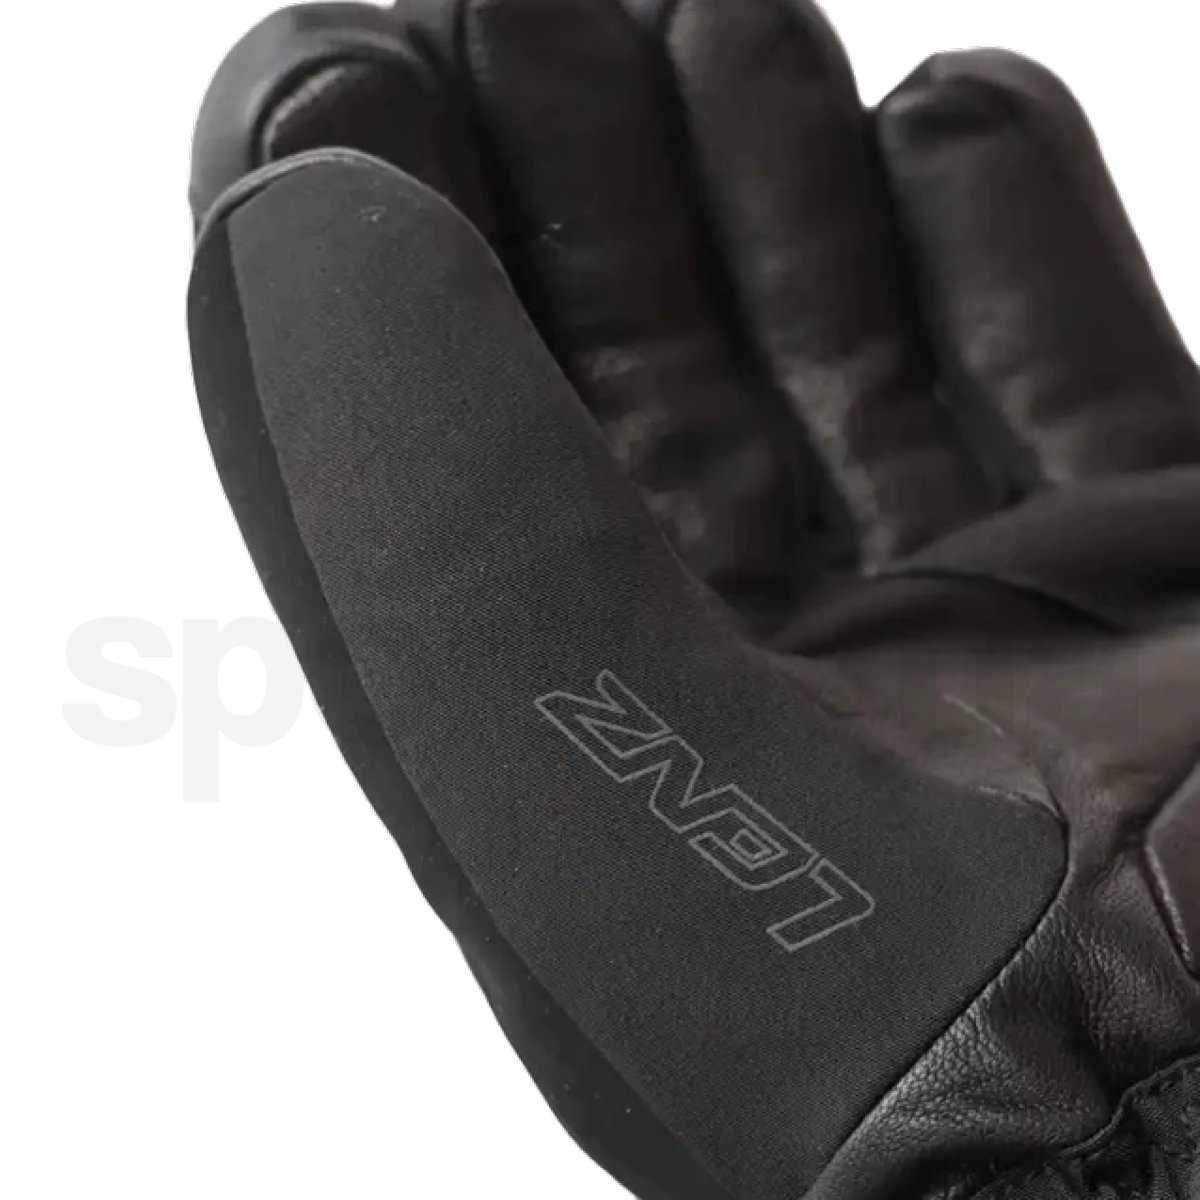 Rukavice vyhřívané Lenz Heat glove 6.0 Finger Cap M - černá (bez baterie)